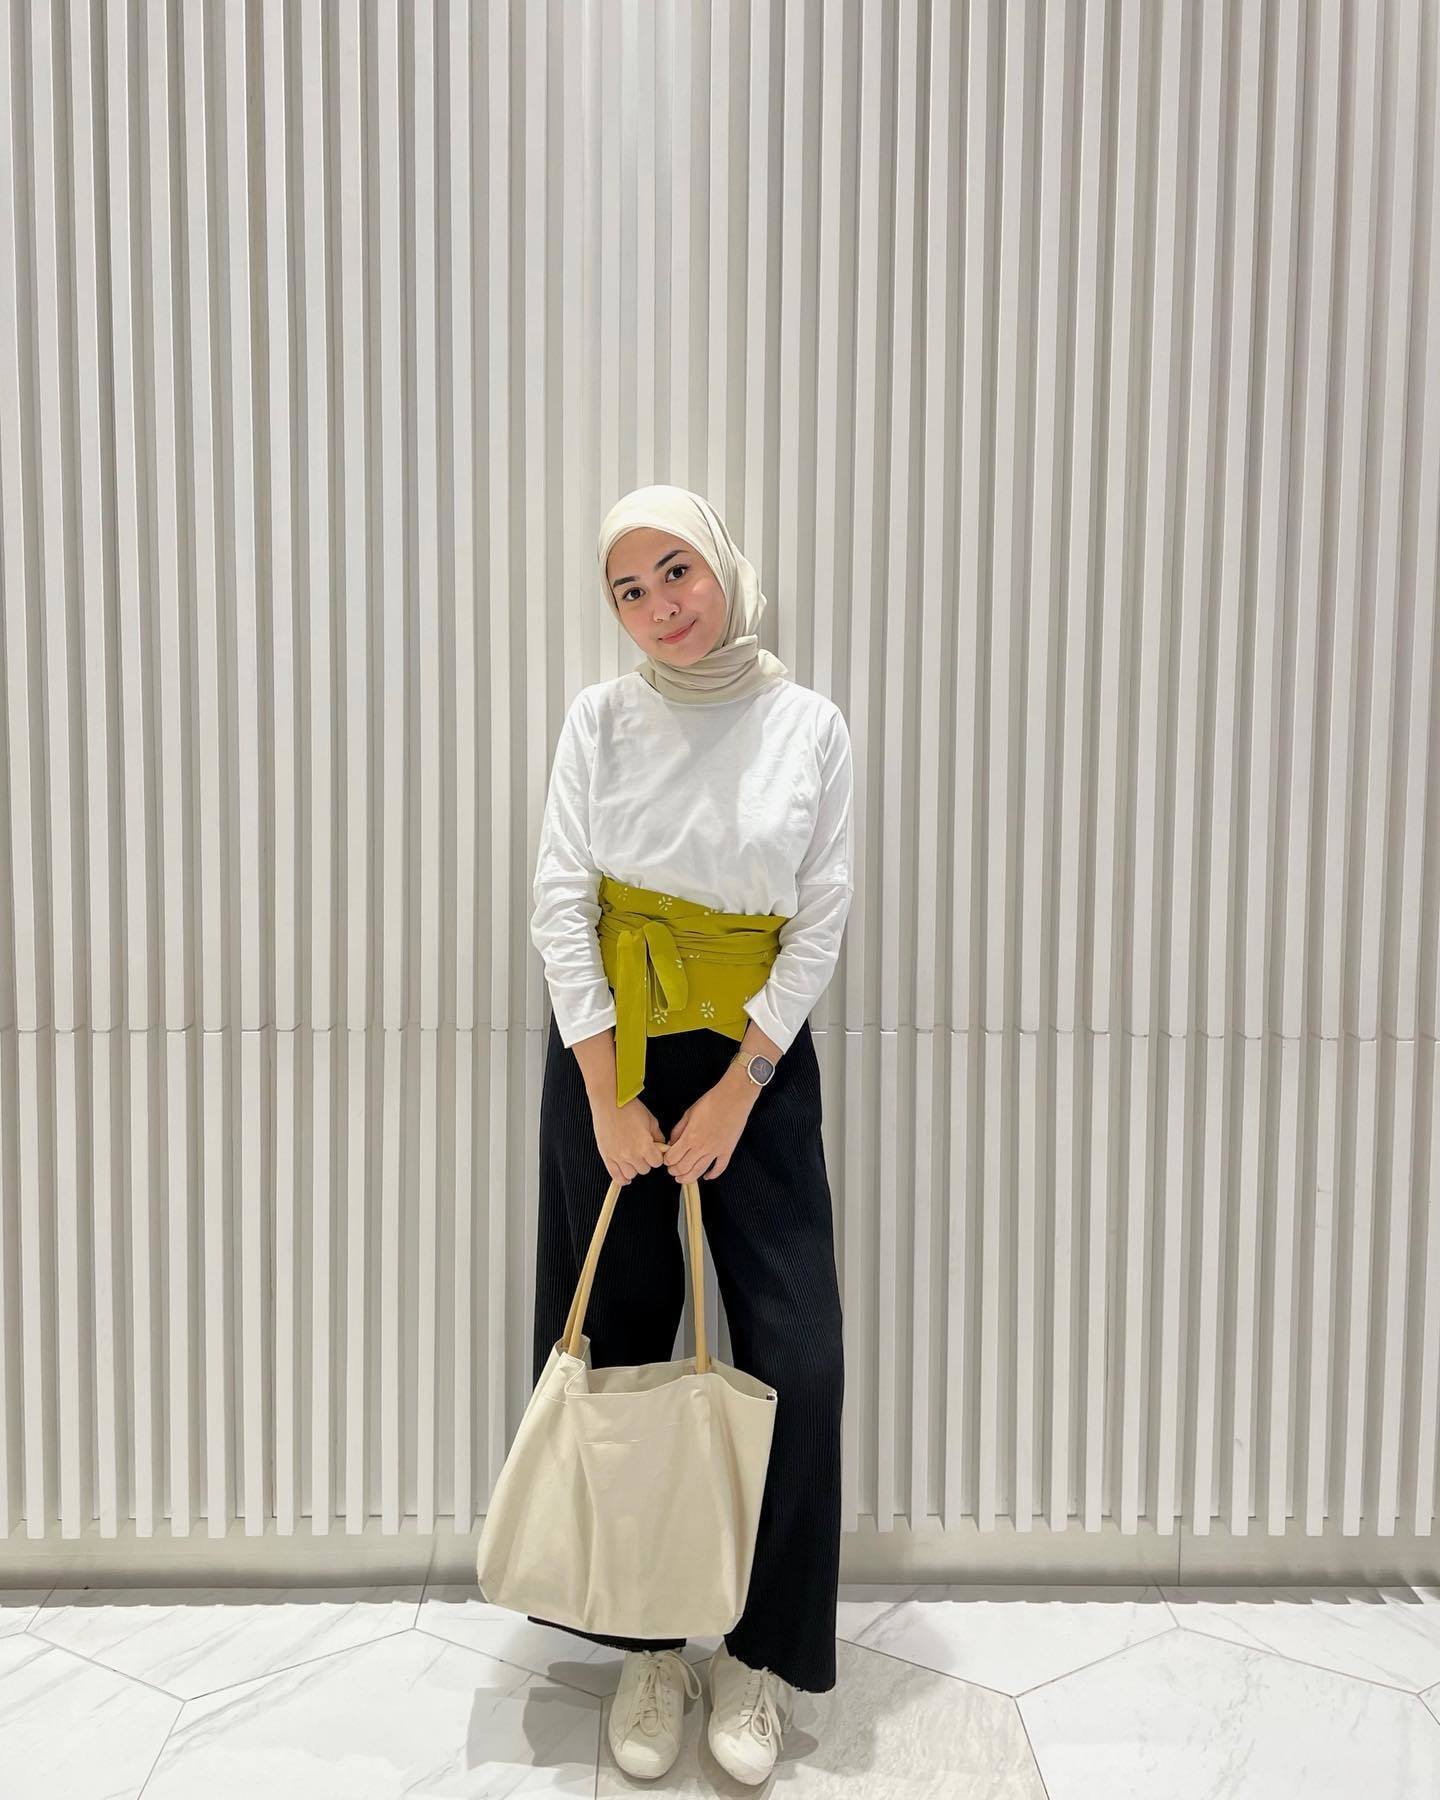 Wanita Indonesia mengenakan hijab dengan baju putih dan celana hitam.